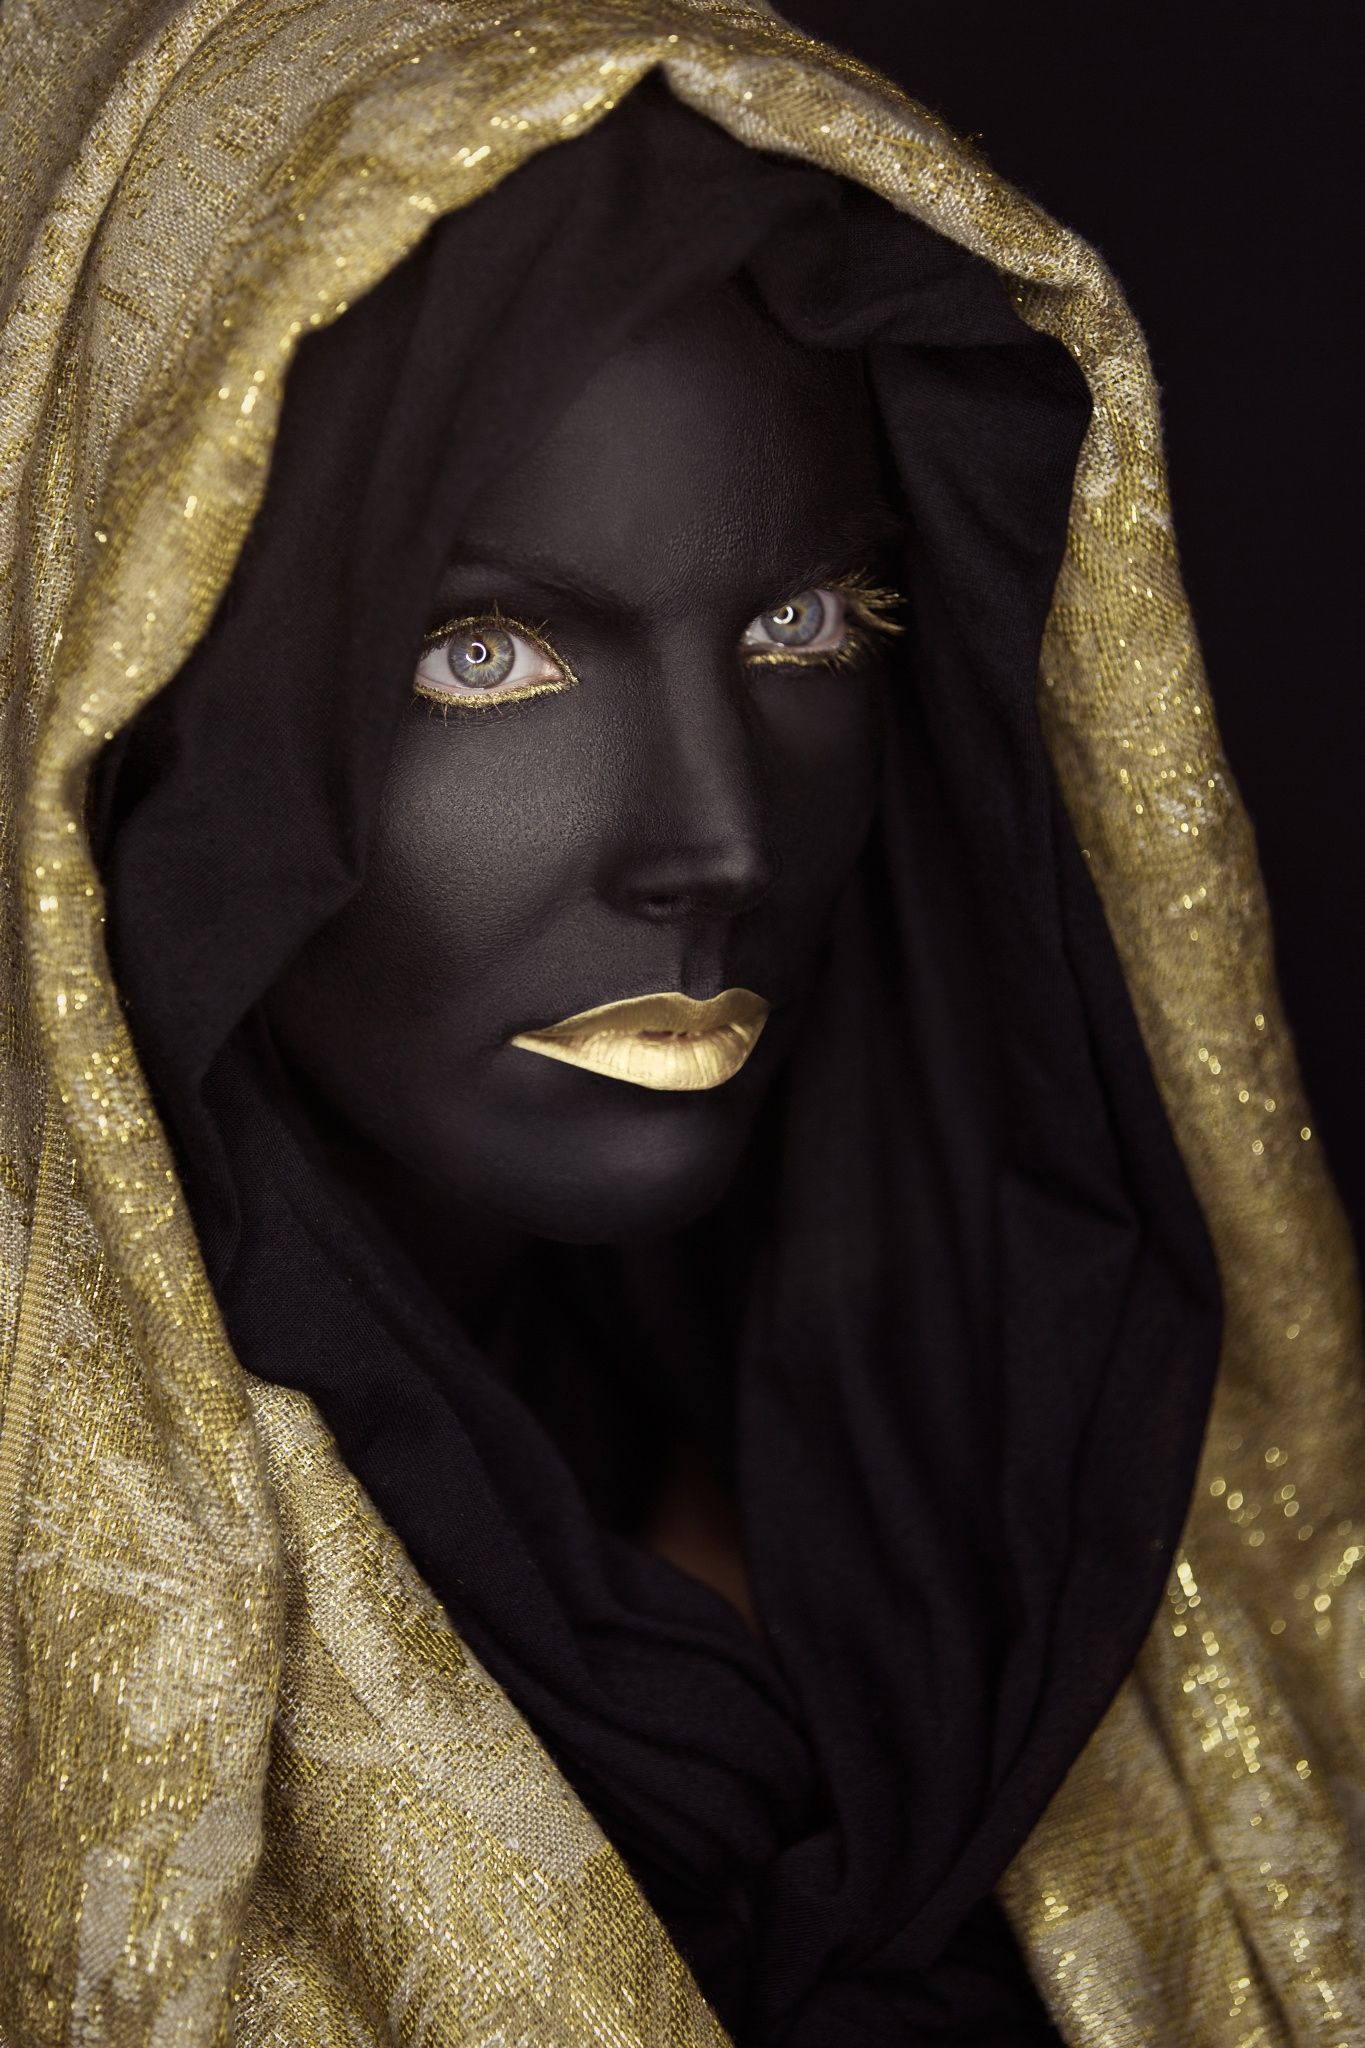 Black Gold. Black girl art, Black women art, Black aesthetic